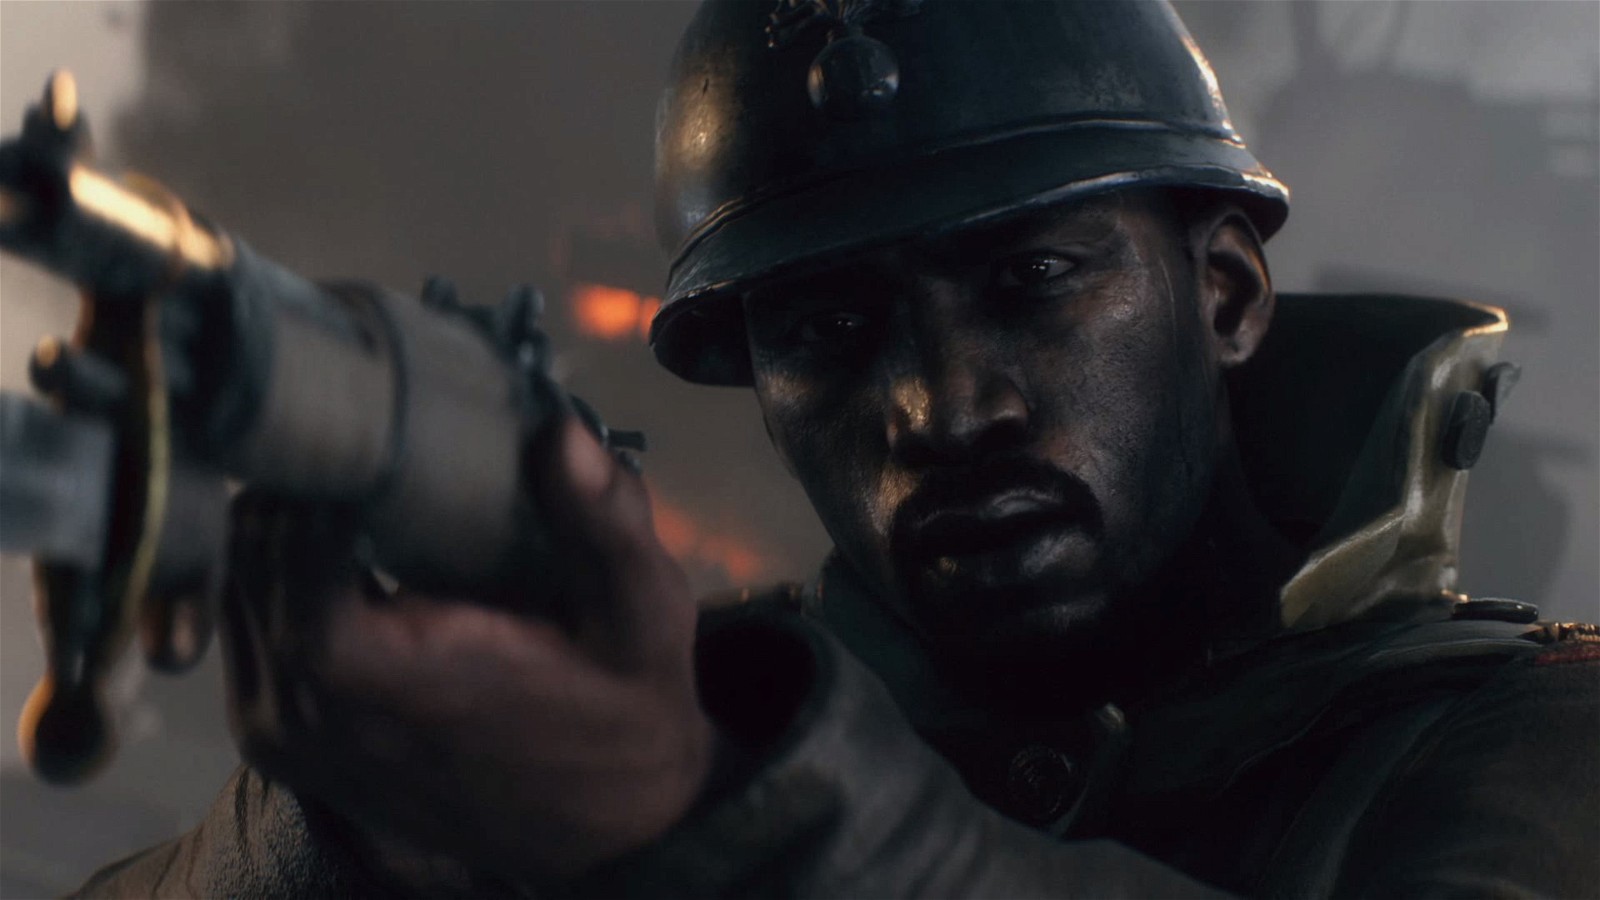 Battlefield 1 tells the story of World War 1